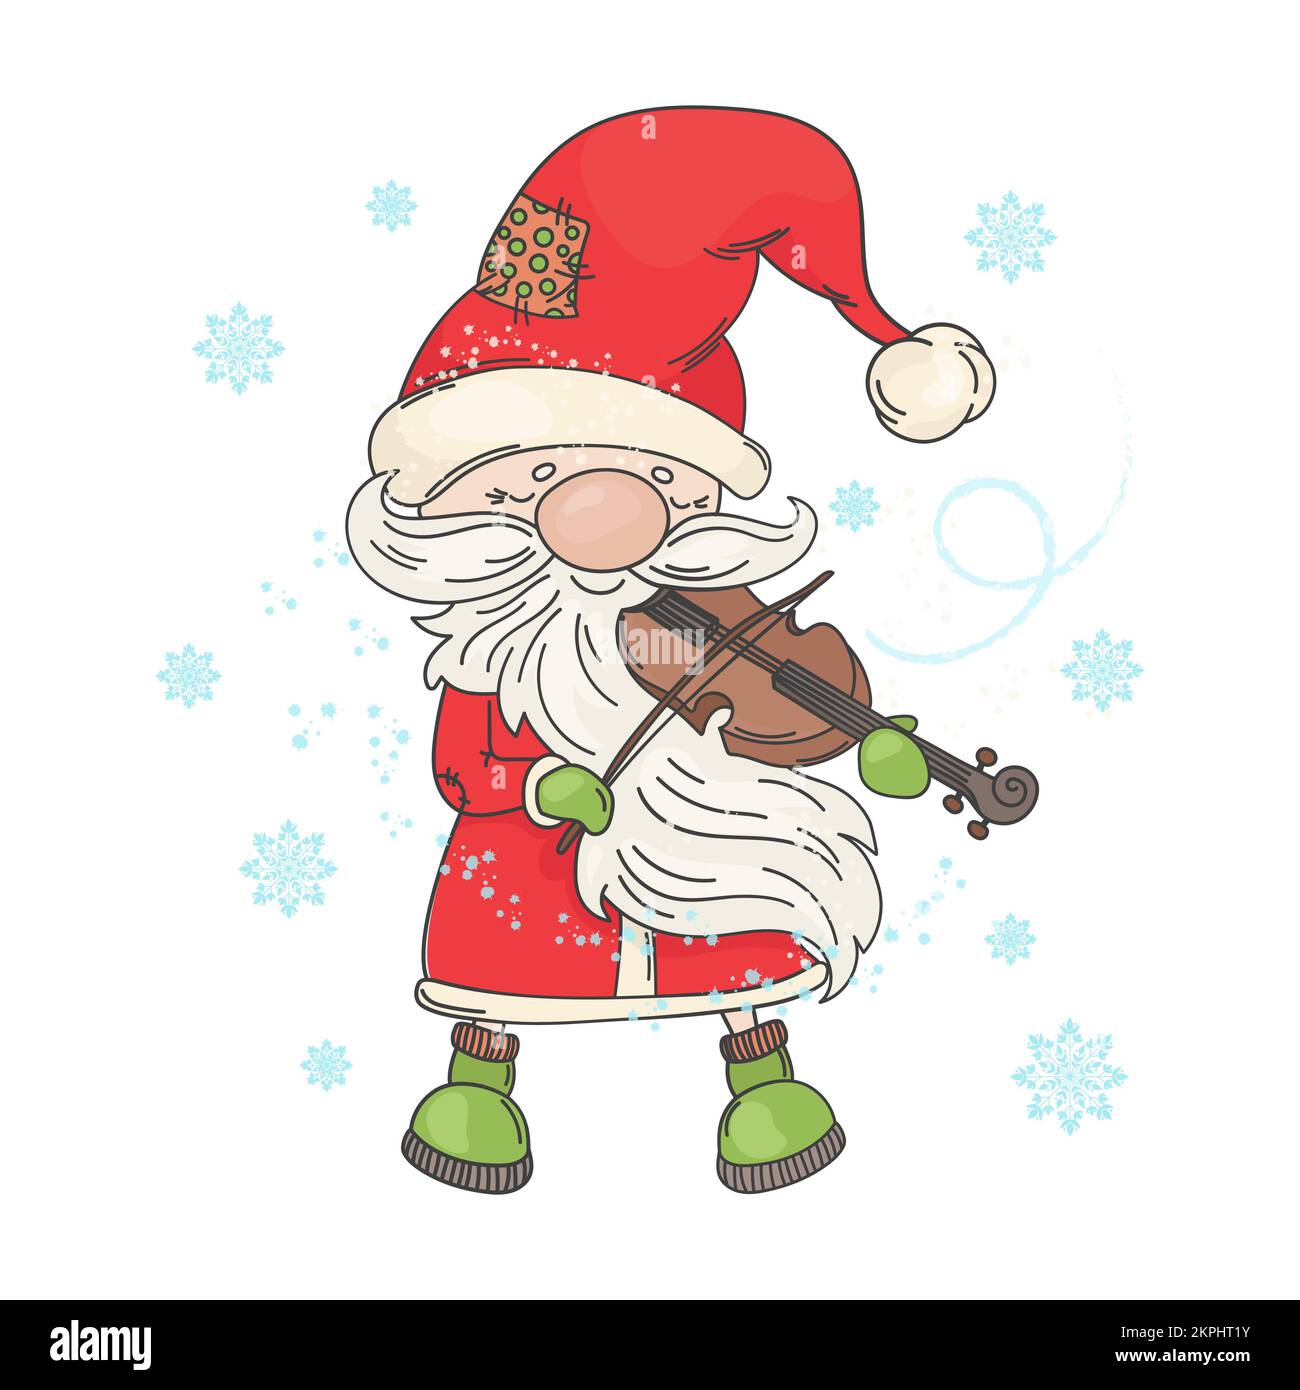 VIOLINO BABBO Natale in cappellino rosso chiusura occhi e giochi sorridenti melodie natalizie fiocchi di neve stanno cadendo intorno Cartoon clip Art Vector Illustration Set per P Illustrazione Vettoriale